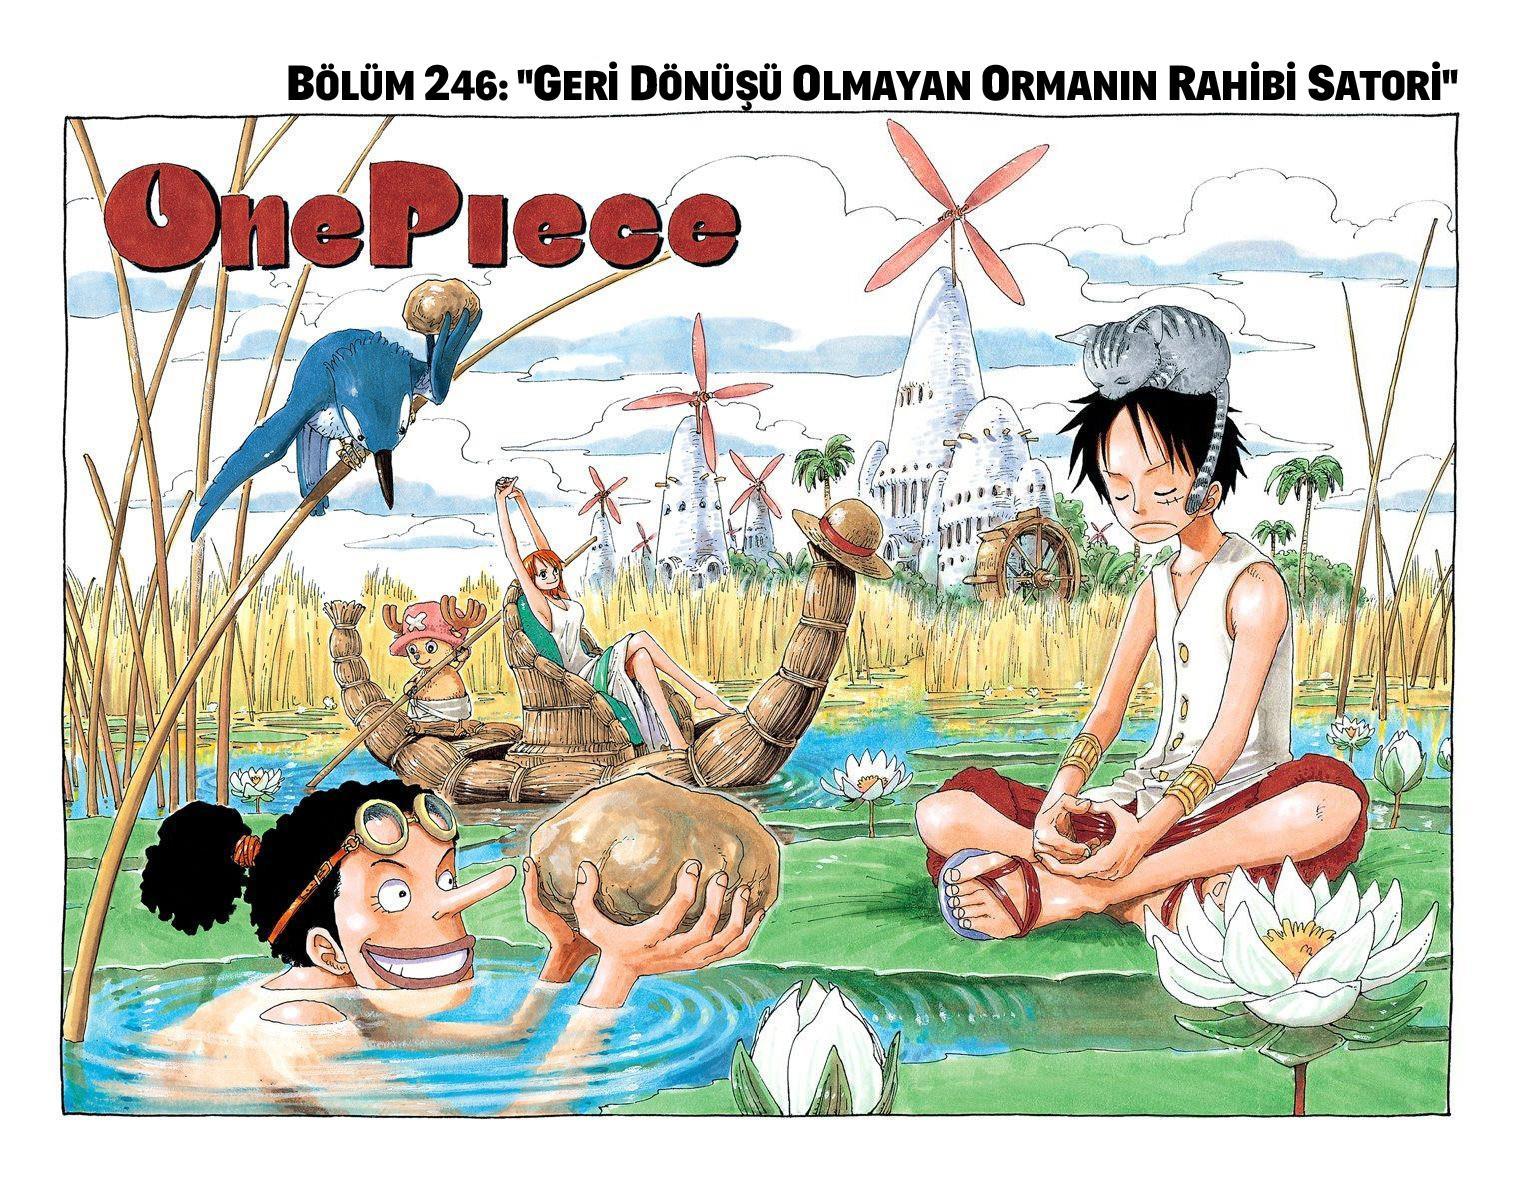 One Piece [Renkli] mangasının 0246 bölümünün 2. sayfasını okuyorsunuz.